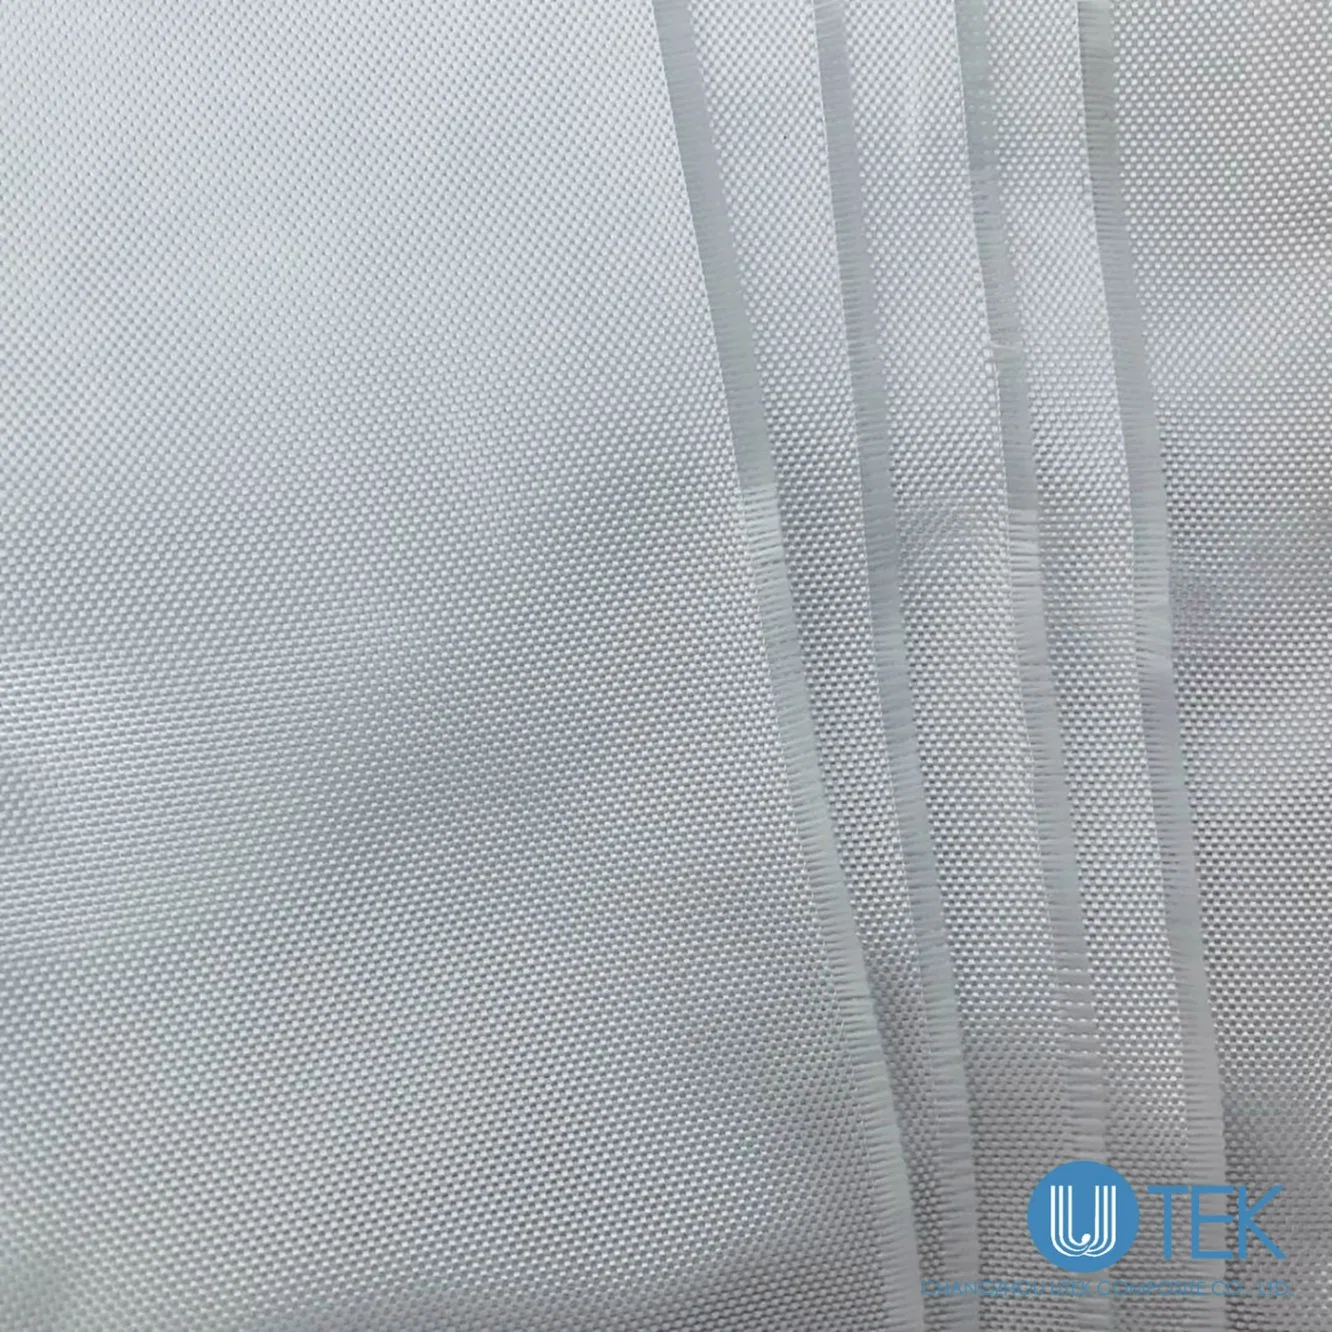 Grau electrónico pano de fibra de vidro 2116 isolamento para o cobre folheados ou chapeados de Laminação